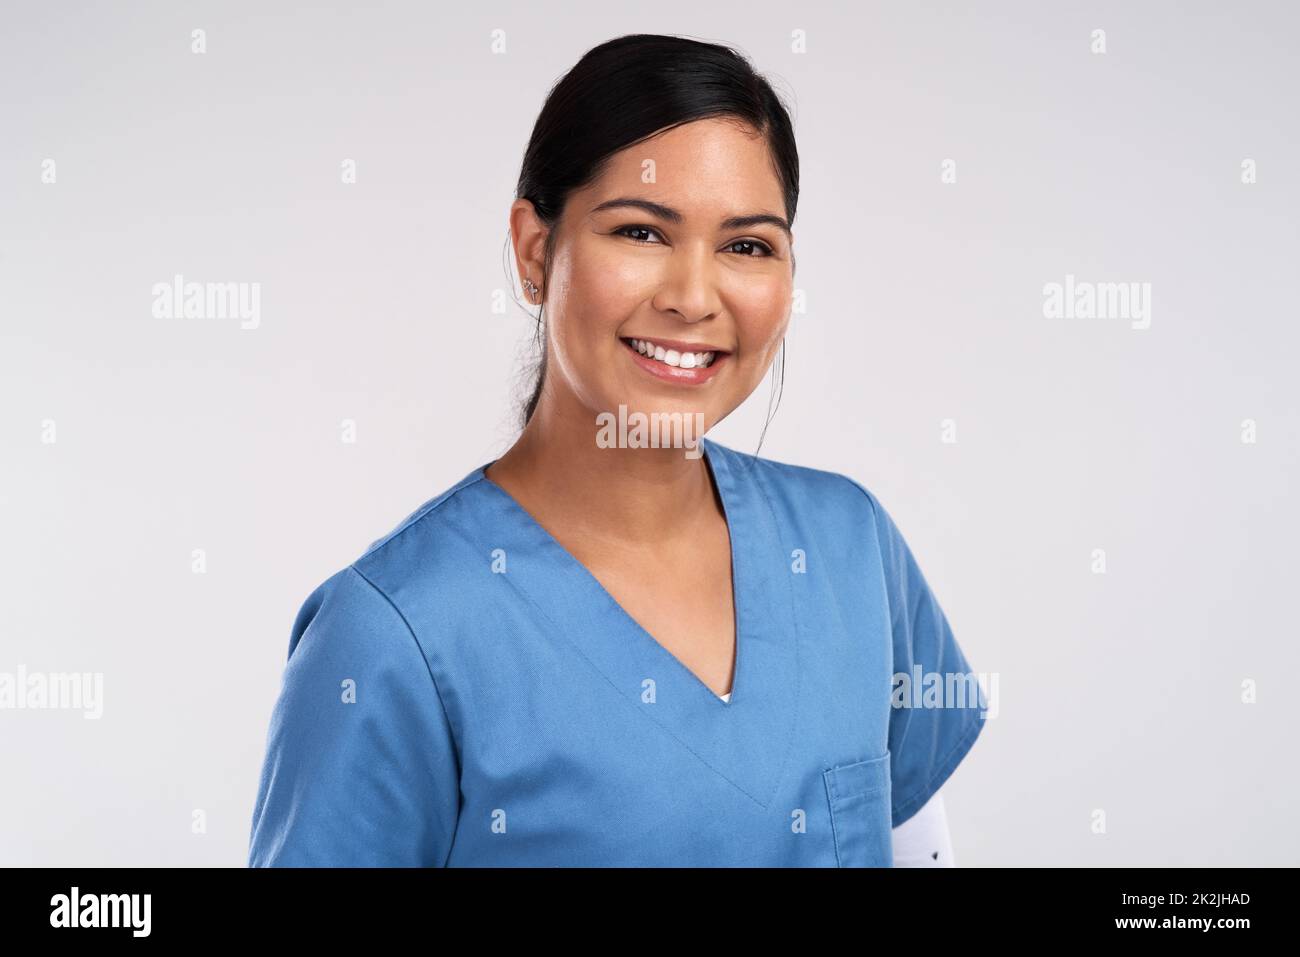 Medizin heilt Krankheiten, Ärzte heilen Menschen. Porträt eines jungen schönen Arztes in Peelings vor weißem Hintergrund. Stockfoto